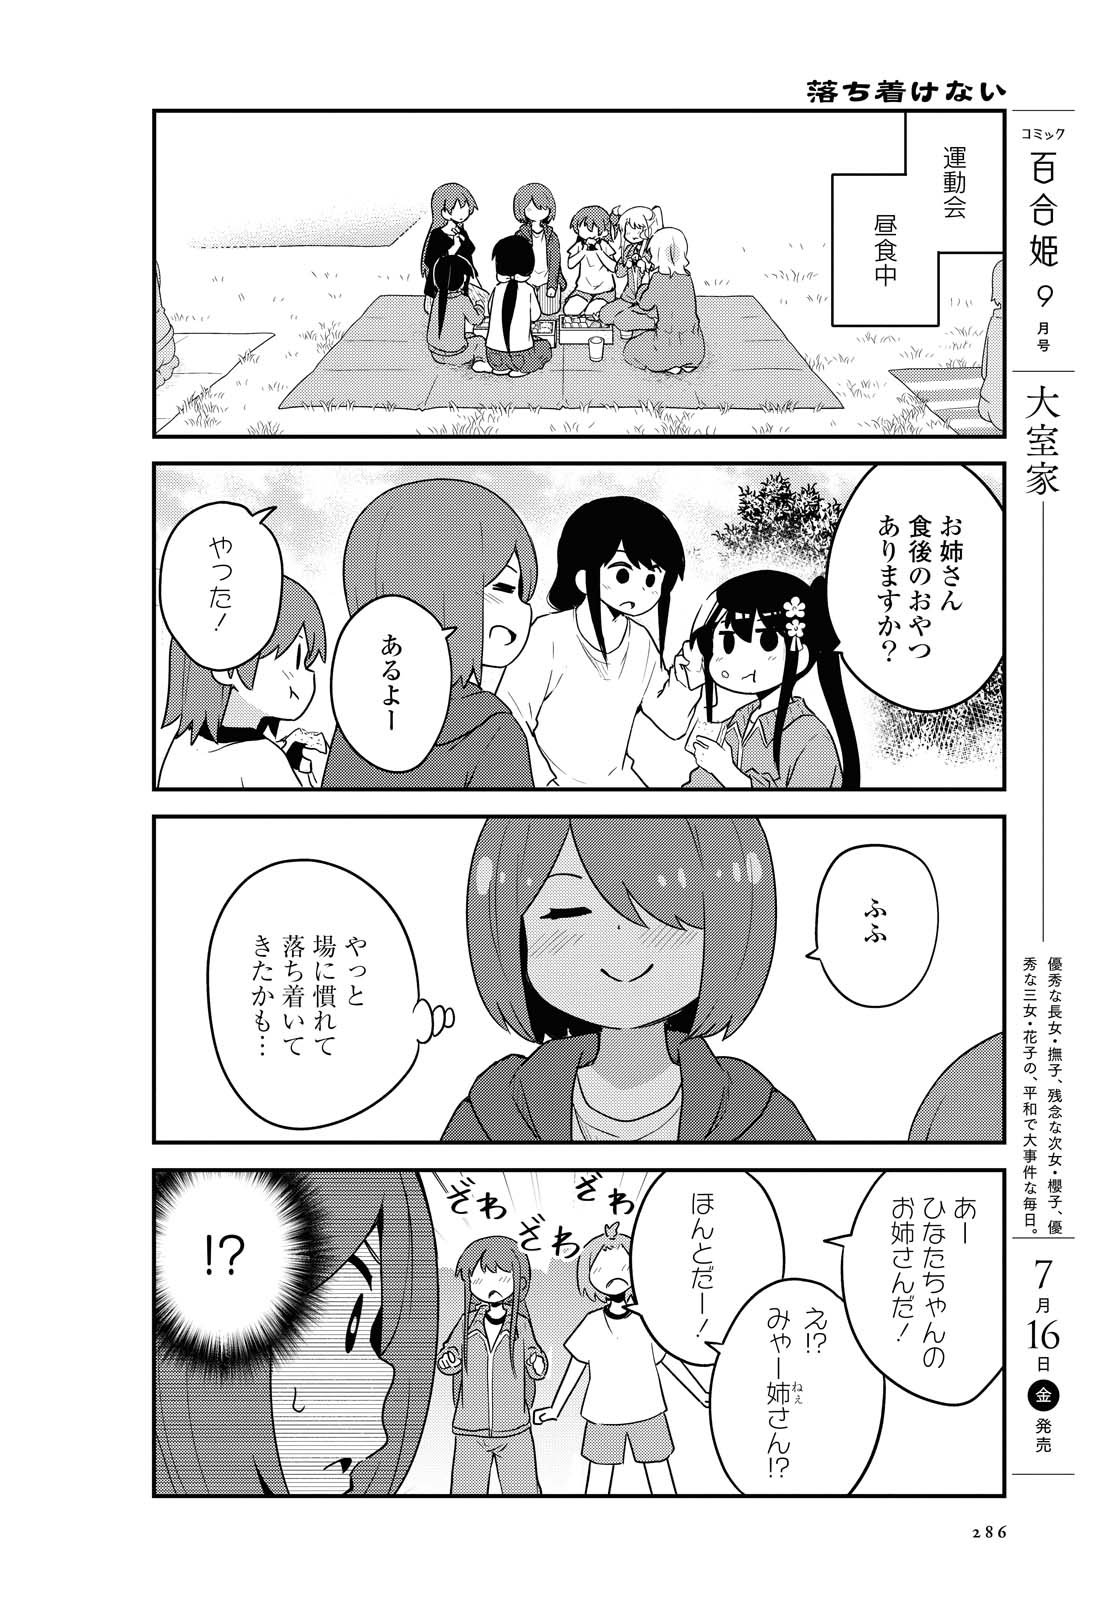 Watashi ni Tenshi ga Maiorita! - Chapter 84 - Page 2